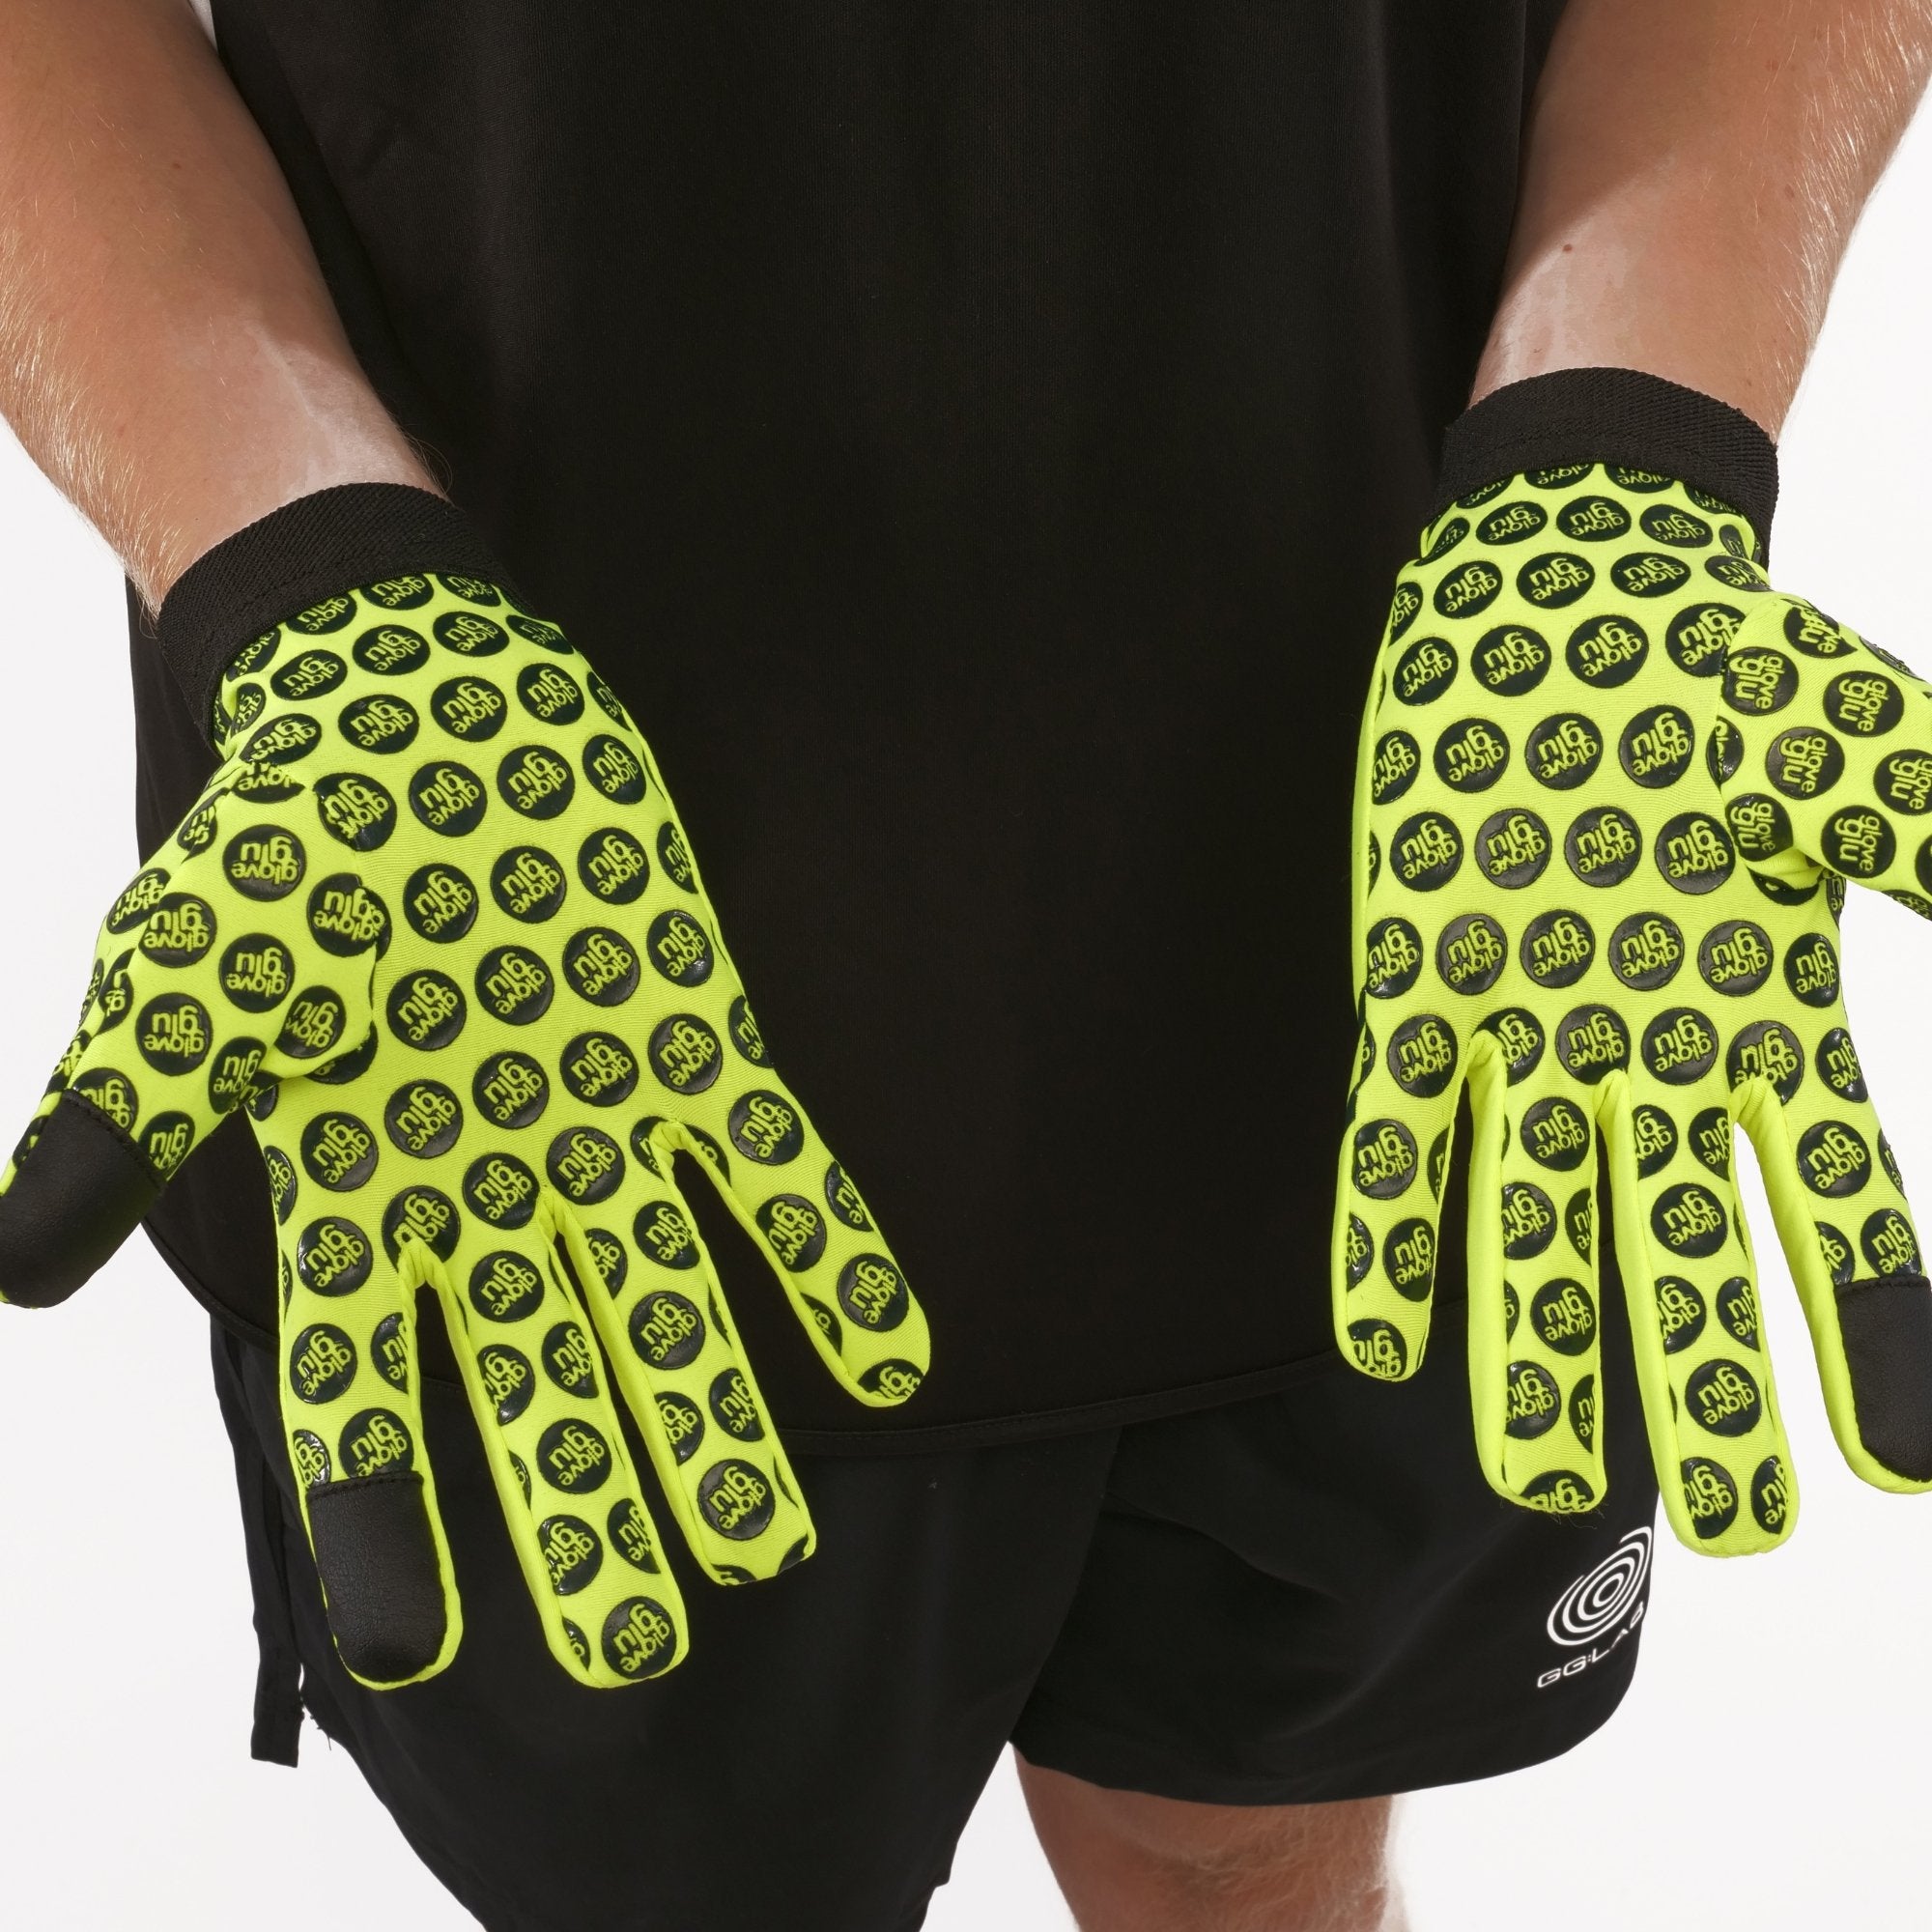 gloveglu glove glue glove care system goalkeeping Austria